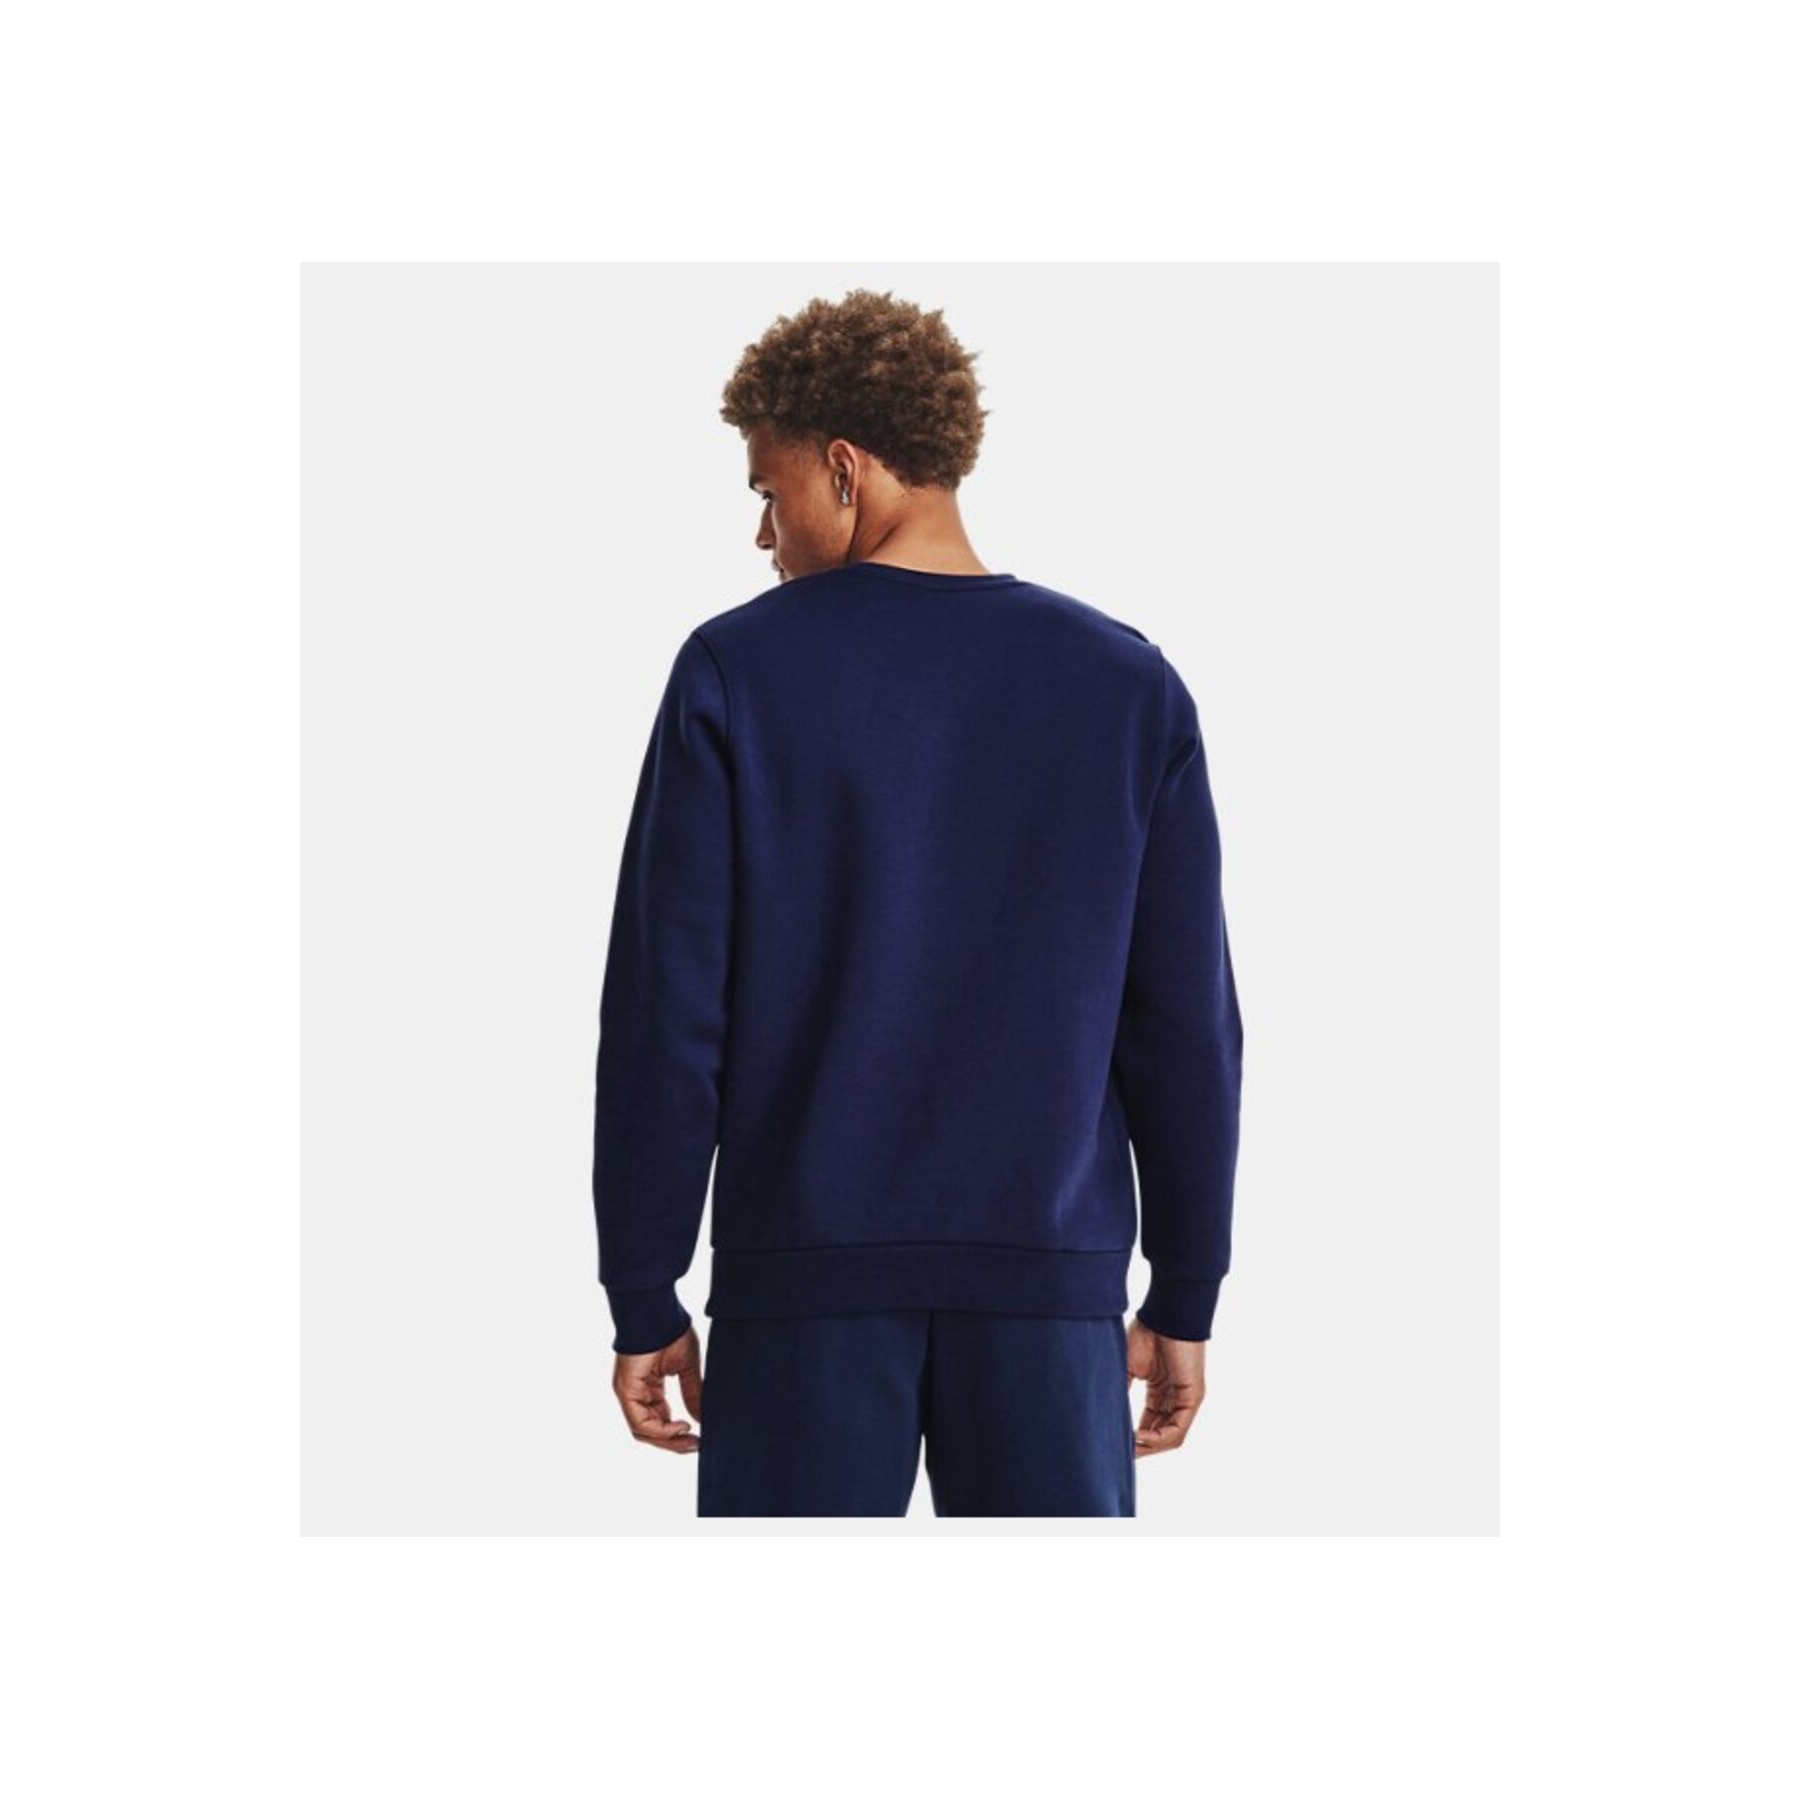 Under Armour Essential Erkek Lacivert Sweatshirt (1374250-410)